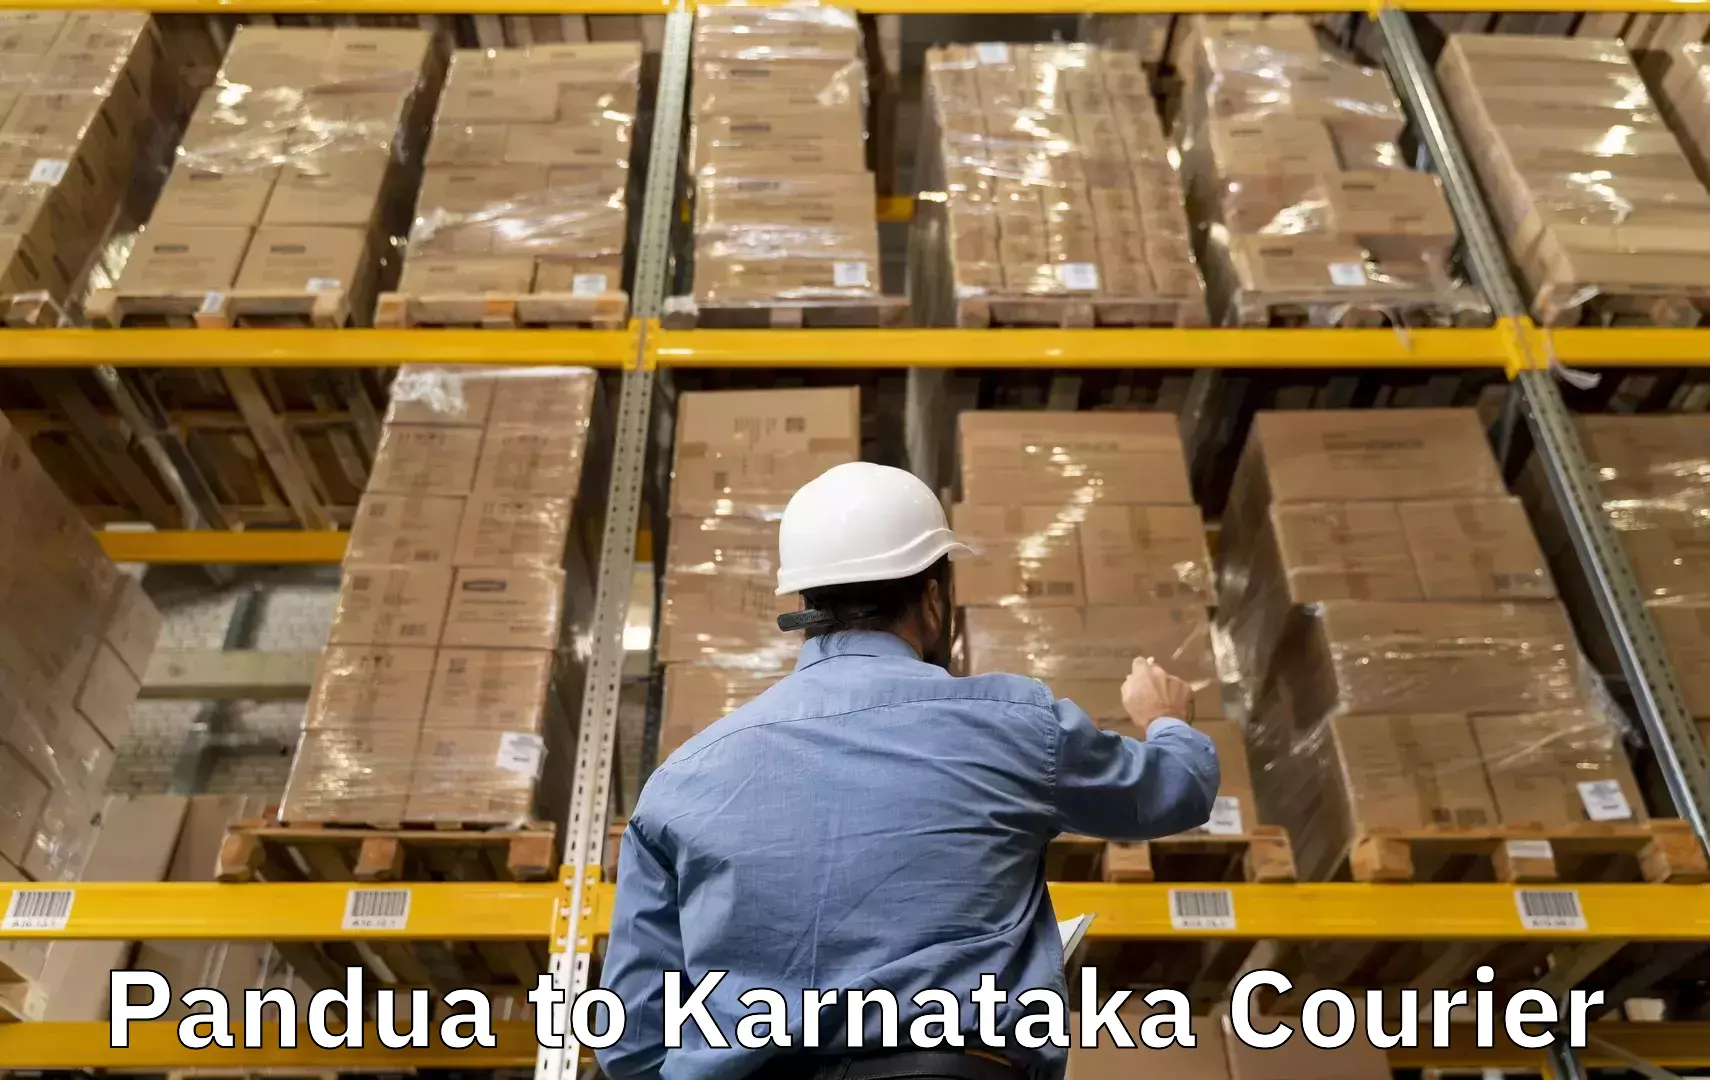 Door-to-door baggage service Pandua to Karnataka